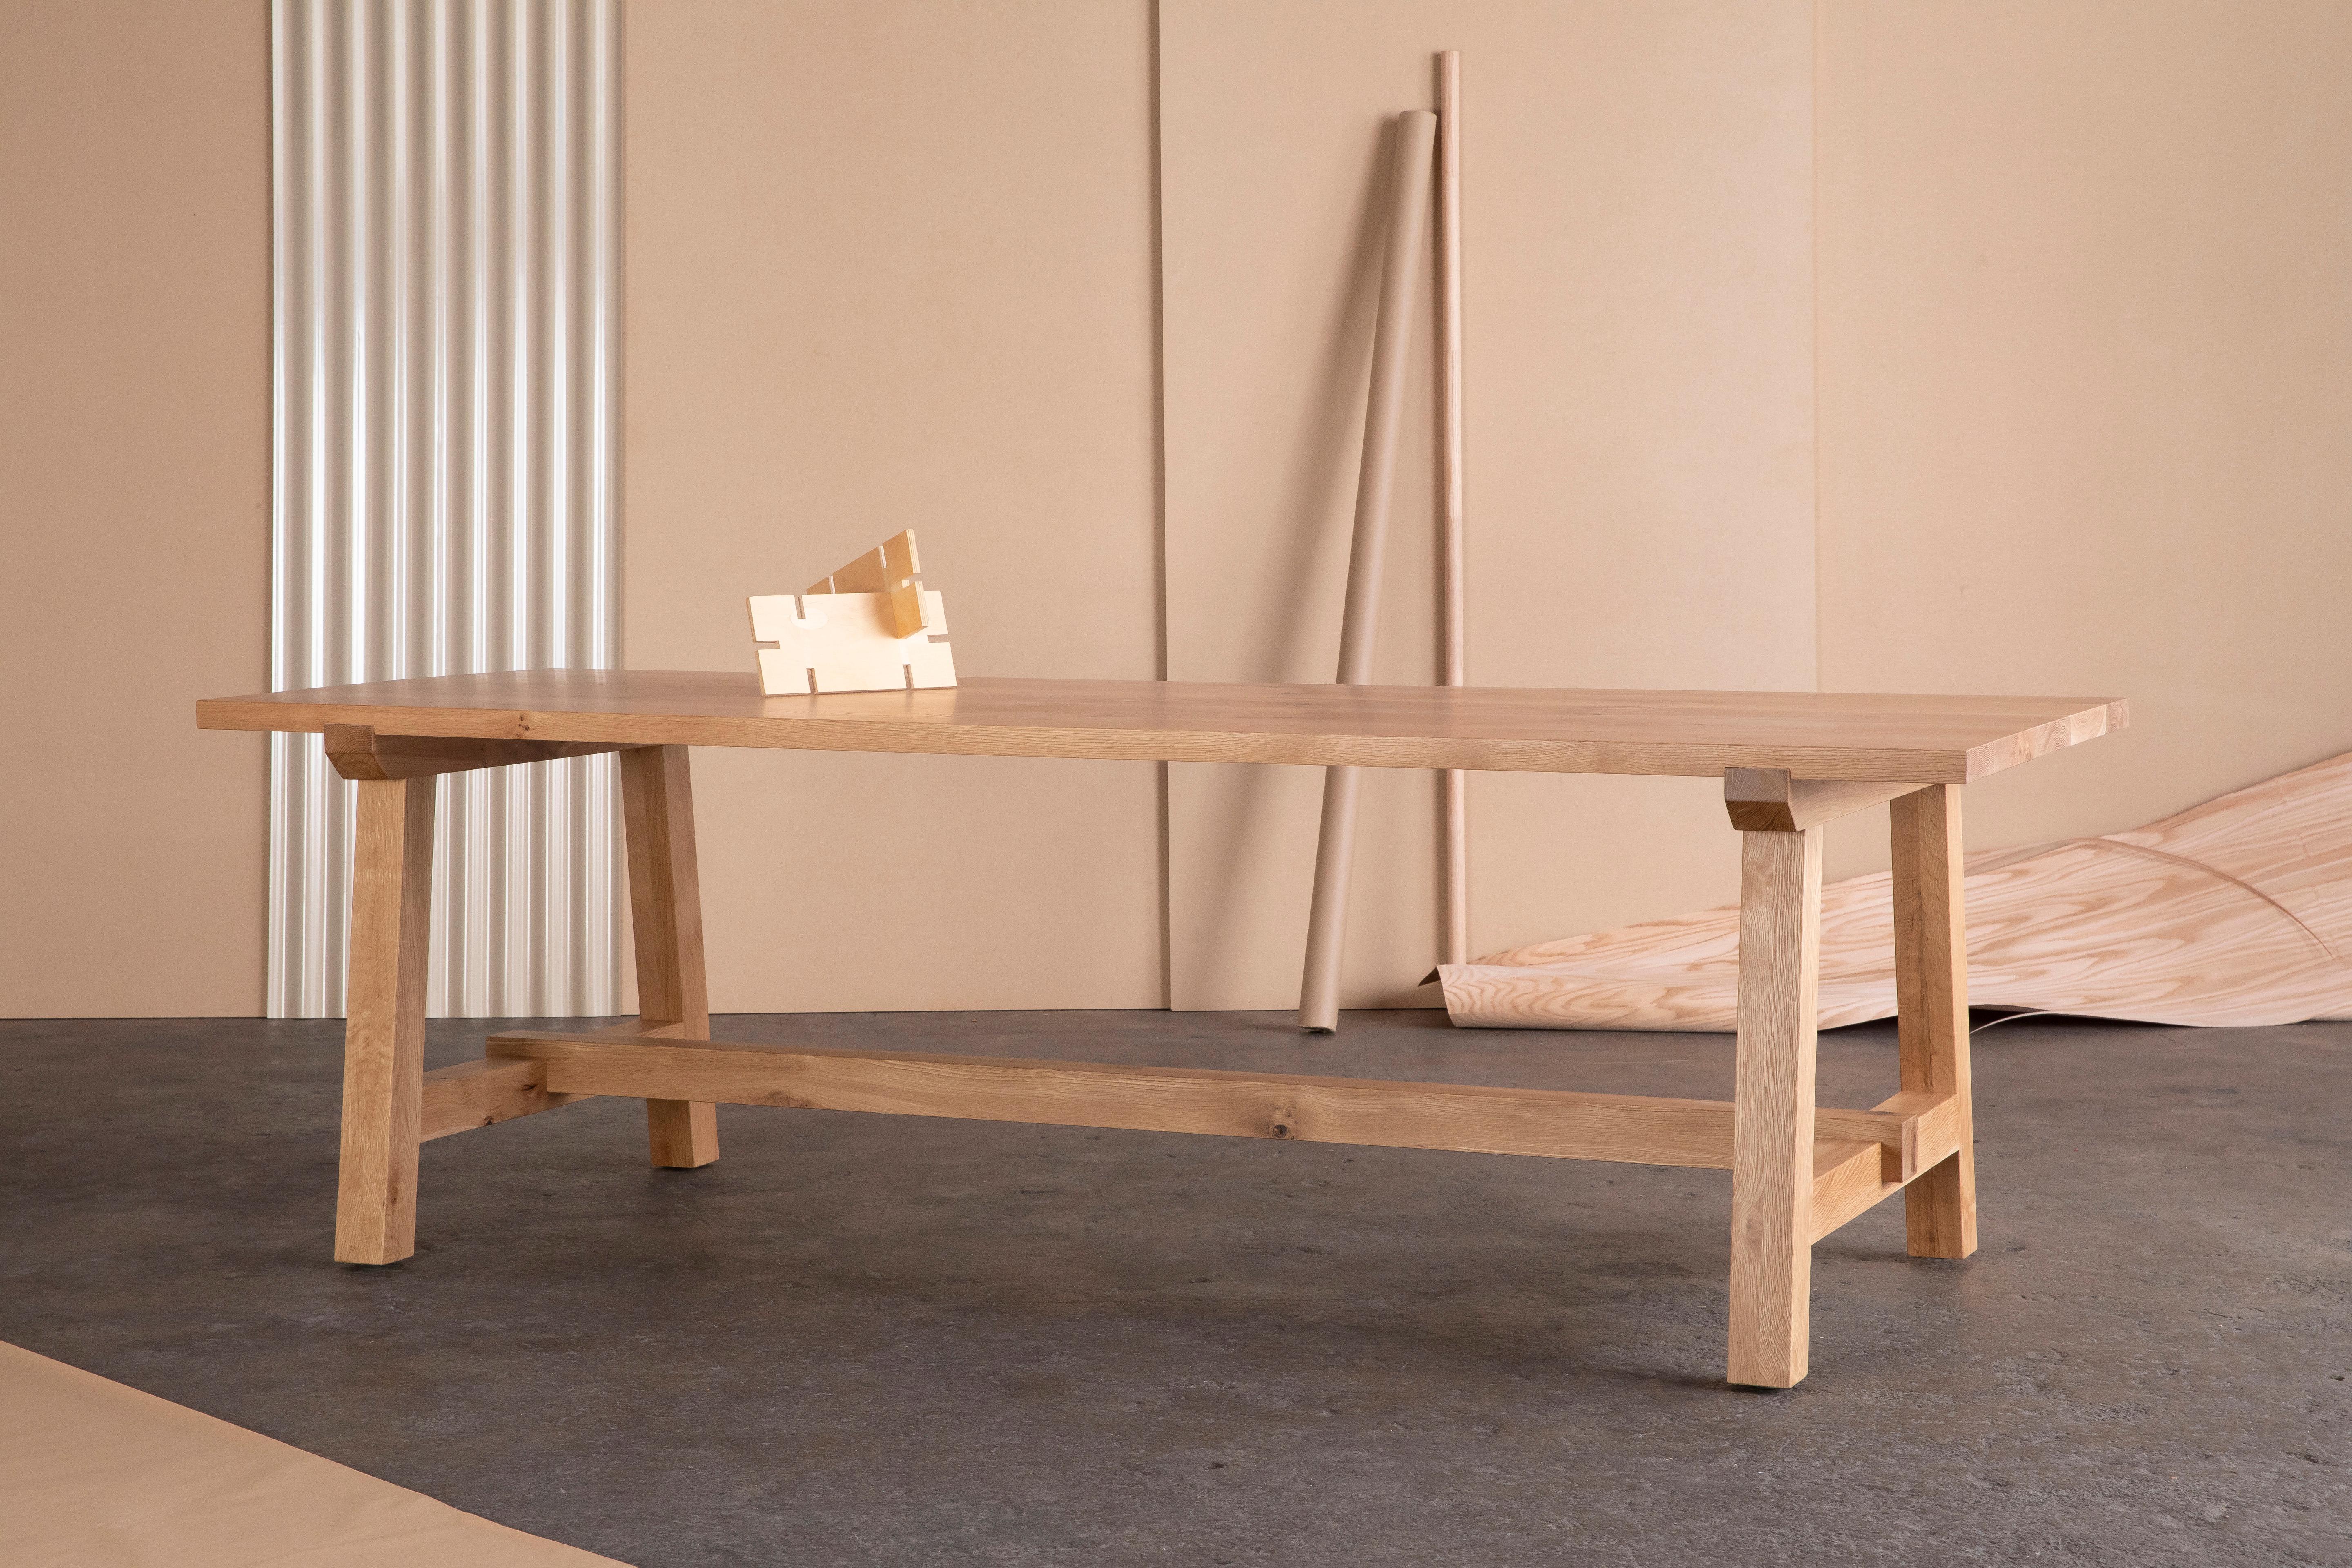 La table de salle à manger Winston en chêne a un look intemporel, s'intégrant confortablement dans des environnements traditionnels, rustiques et modernes.

Soutenue par un solide brancard en bois massif, la base à tréteaux définit le style et la